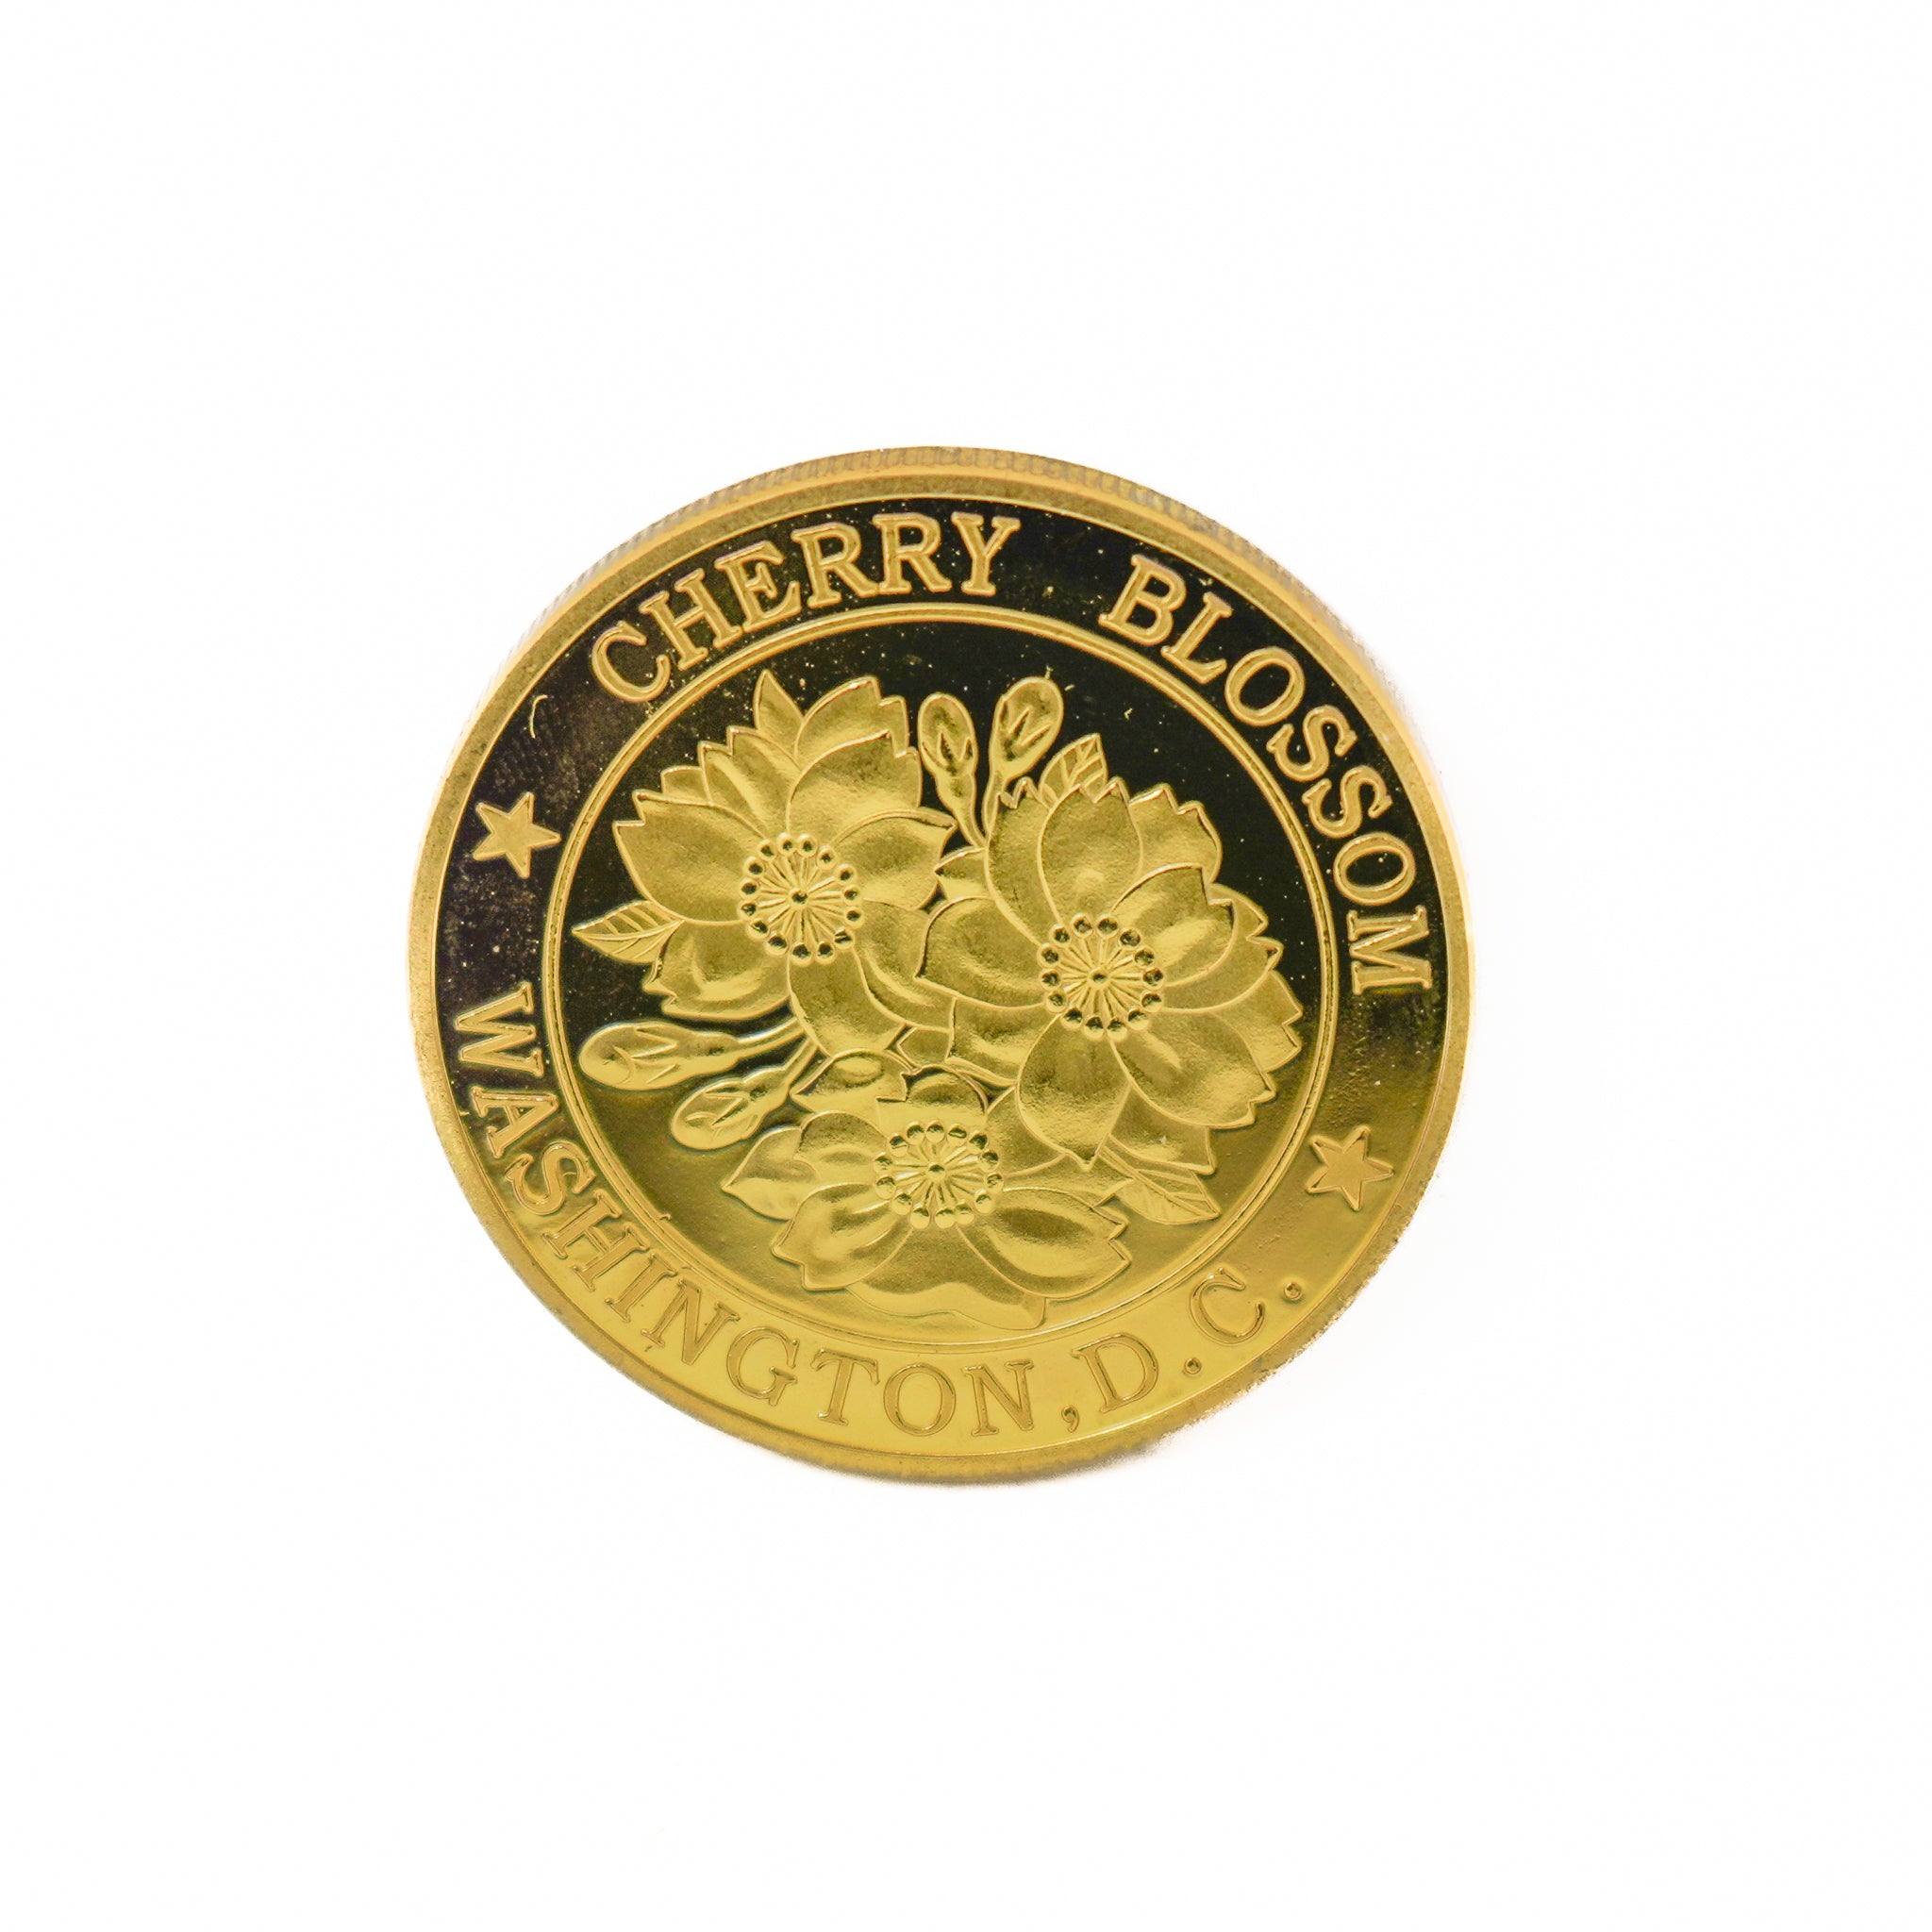 Washington DC Collectible Souvenir Coin w/ Cherry Blossoms (2 Styles)